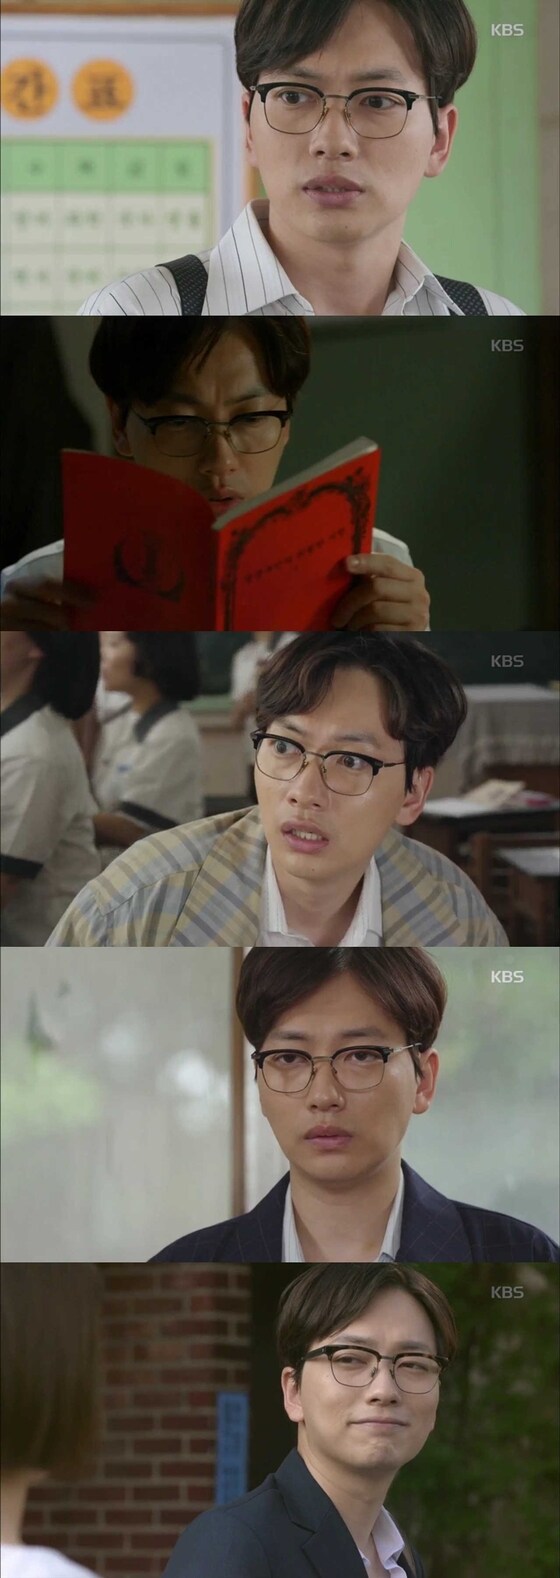 이동휘가 새로운 캐릭터로 연기 영역을 넓혔다. © News1star / KBS2 ‘빨간선생님’